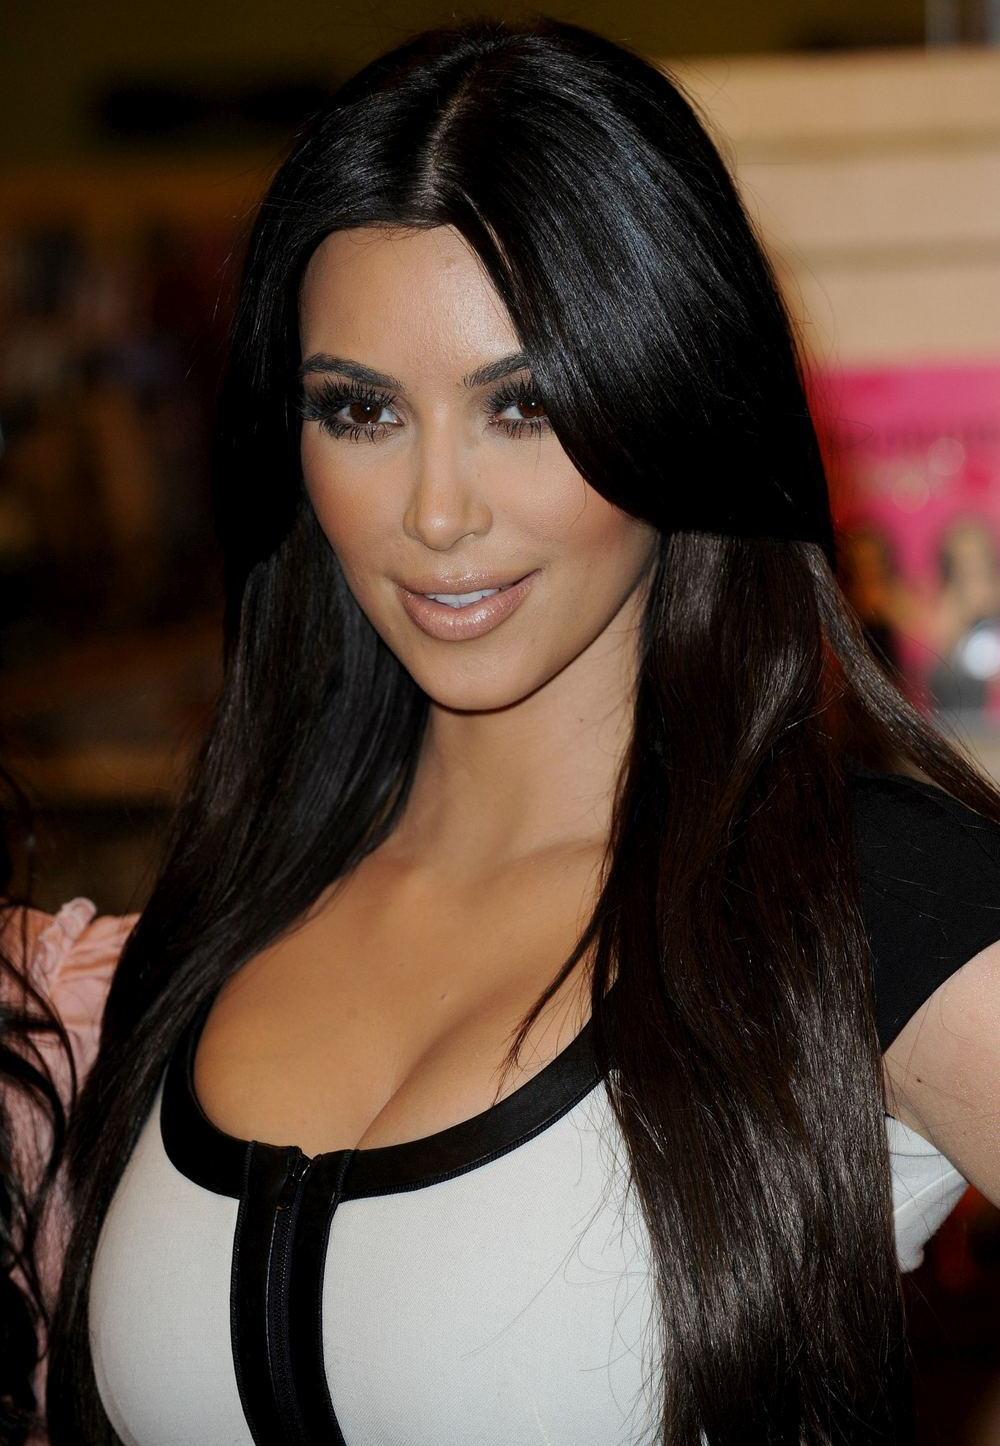 Kim, Kourtney, Khloe Kardashian podpisują książkę Kardashian Konfidental